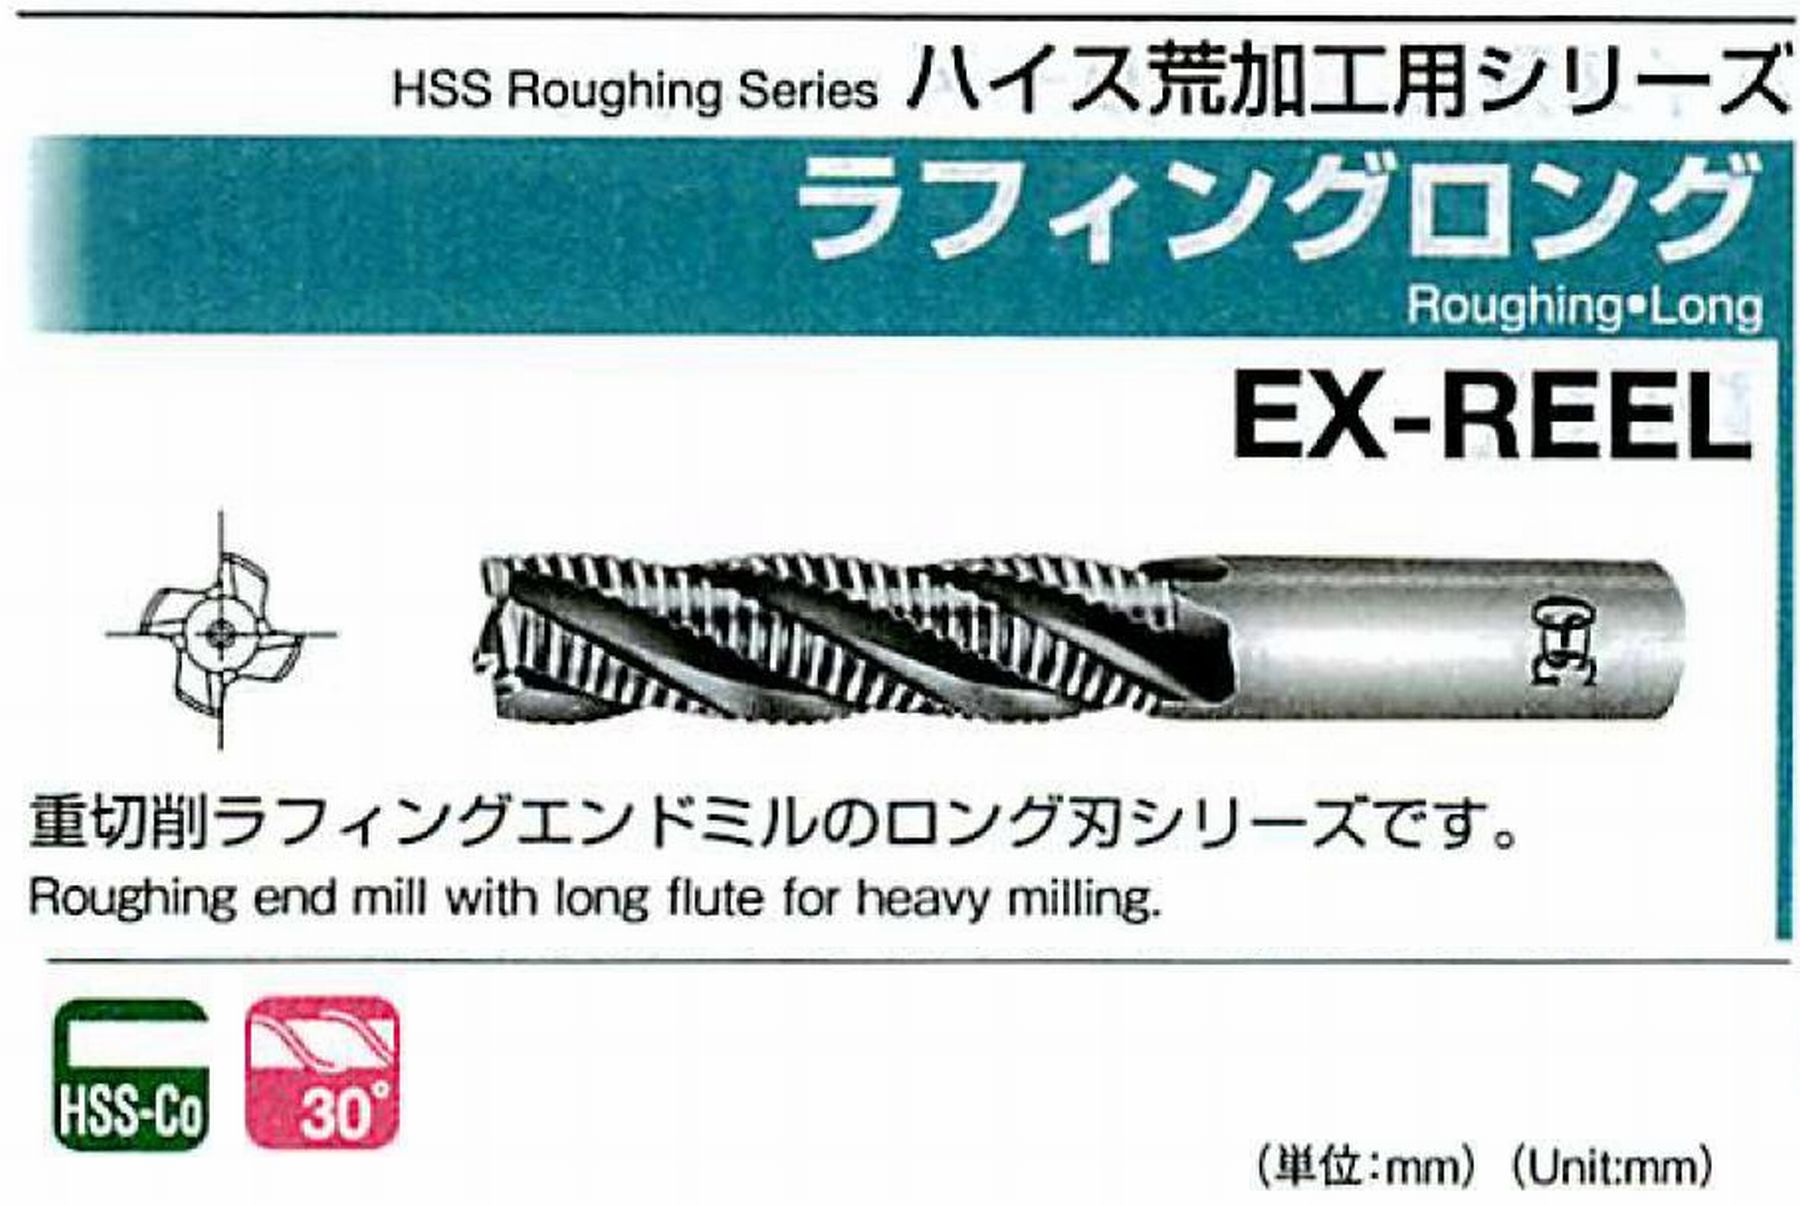 オーエスジー/OSG ラフィング ロング EX-REEL 外径13 全長110 刃長53 シャンク径12mm 刃数4